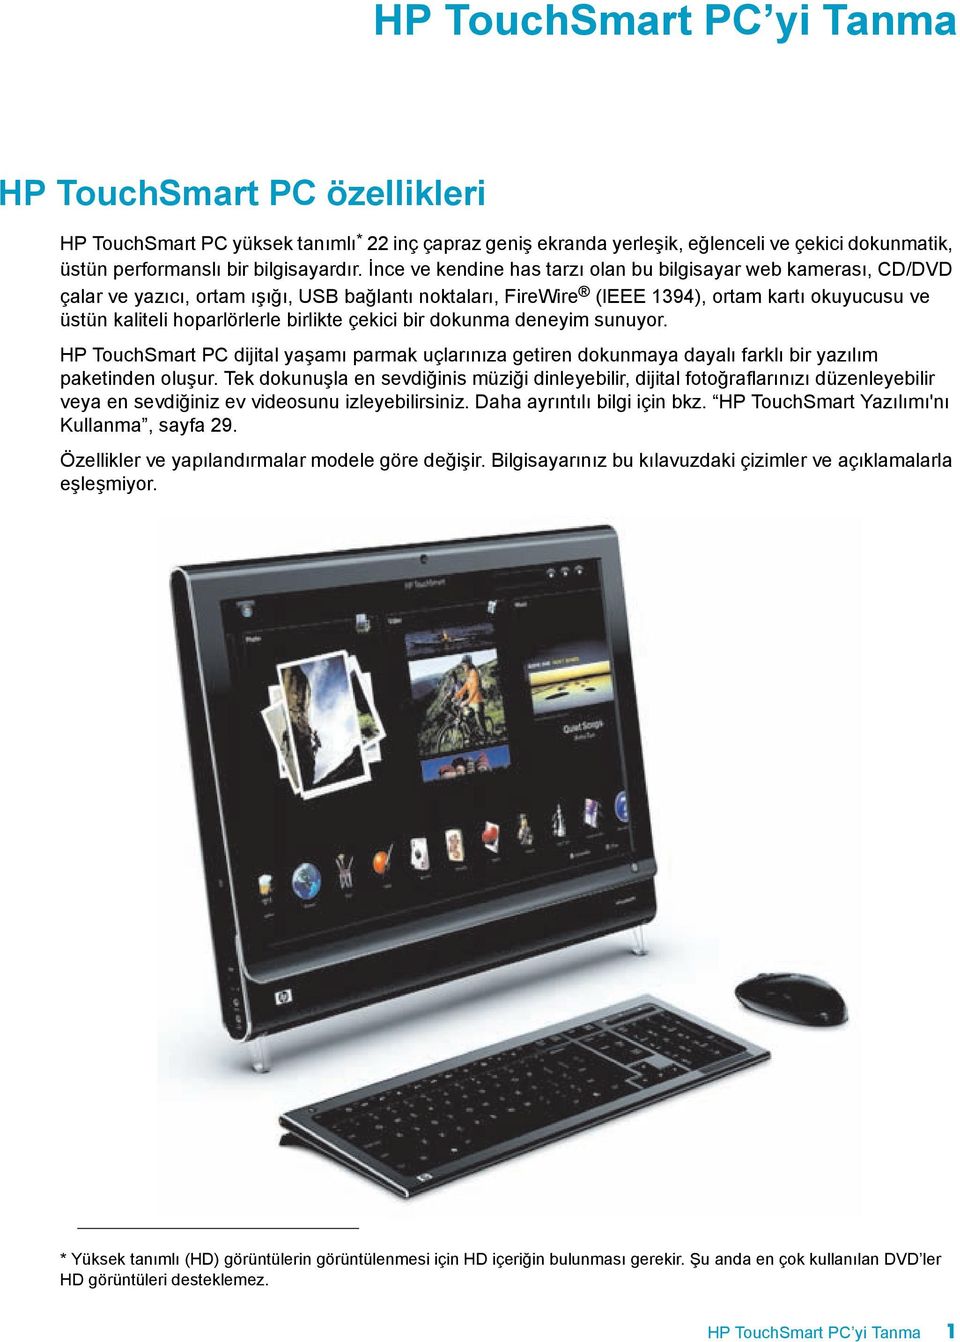 birlikte çekici bir dokunma deneyim sunuyor. HP TouchSmart PC dijital yaşamõ parmak uçlarõnõza getiren dokunmaya dayalõ farklõ bir yazõlõm paketinden oluşur.